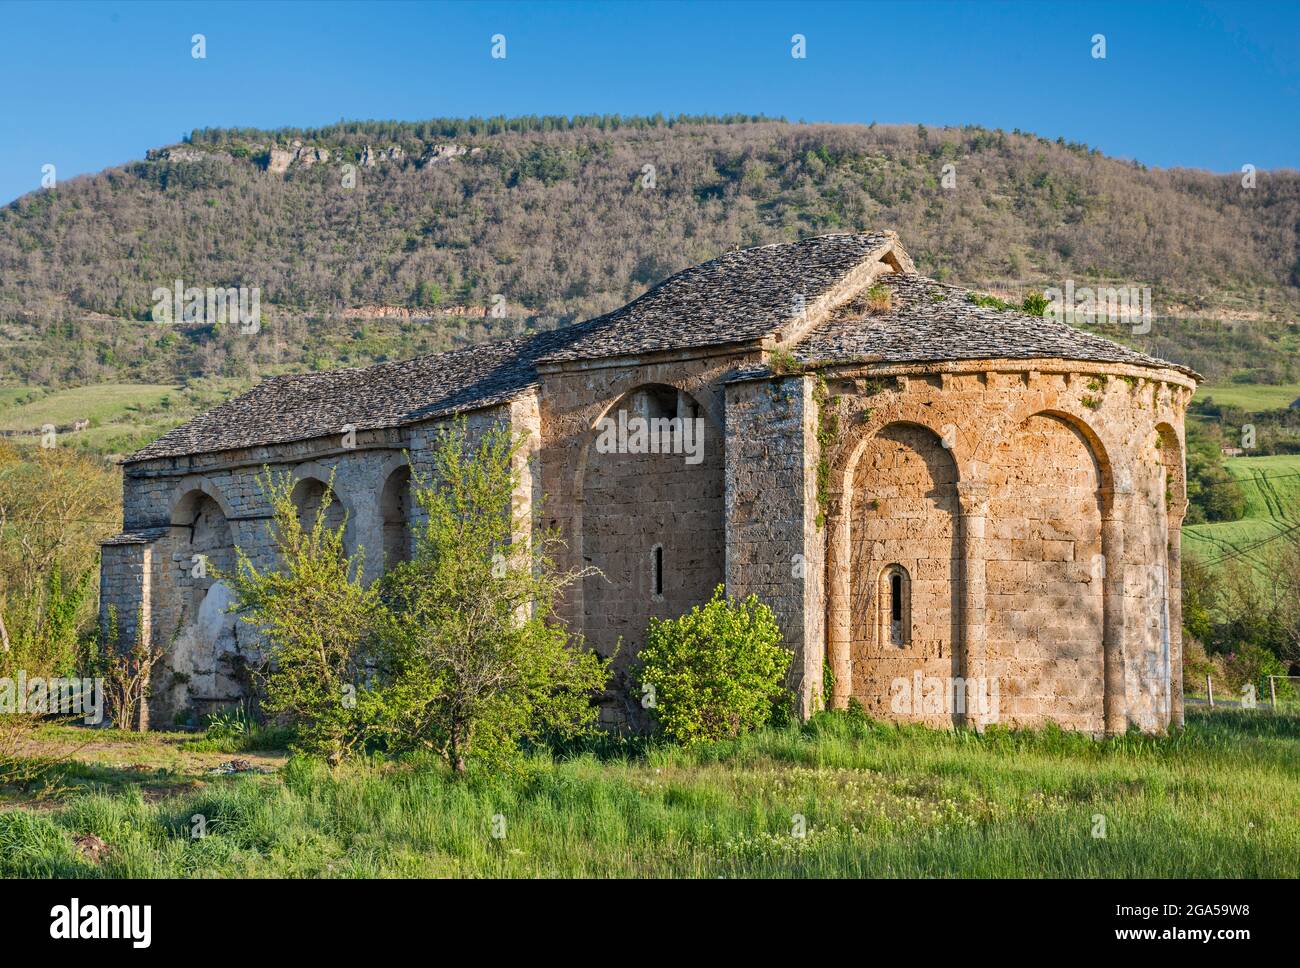 Église romane près de la ville de Nant, commune dans le département de l'Aveyron, Vallée de la Dourbie, région des Causses, Occitanie, France Banque D'Images